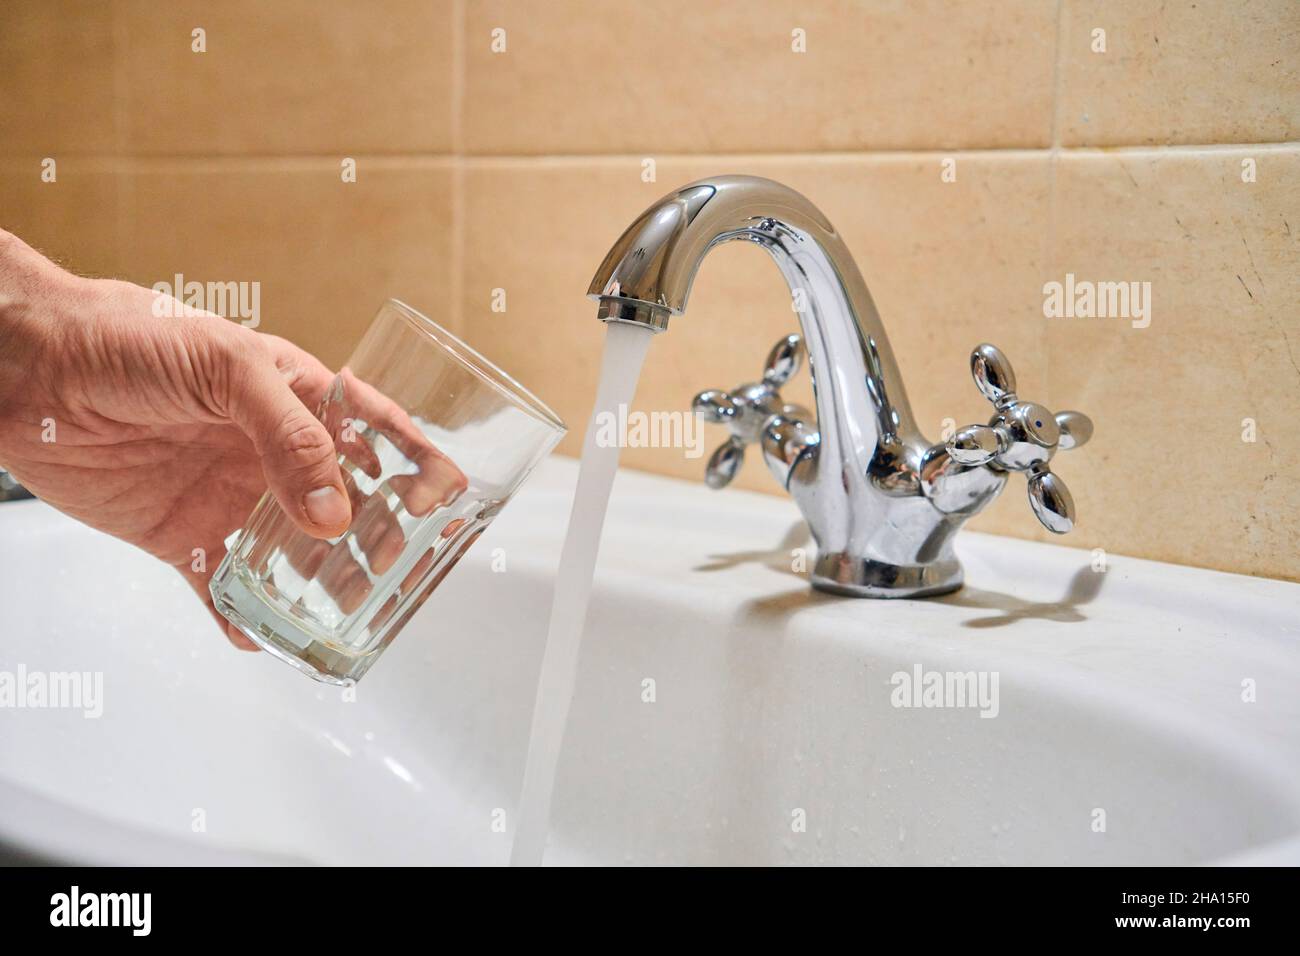 Mans Hand hält leeres Glas in der Nähe Badezimmer Edelstahl Säule Wasserhahn.  Erwägen Sie, fließendes Wasser aus dem Chrom-Wasserhahn zu gießen. Sicher zu  trinken oder nicht fit Stockfotografie - Alamy